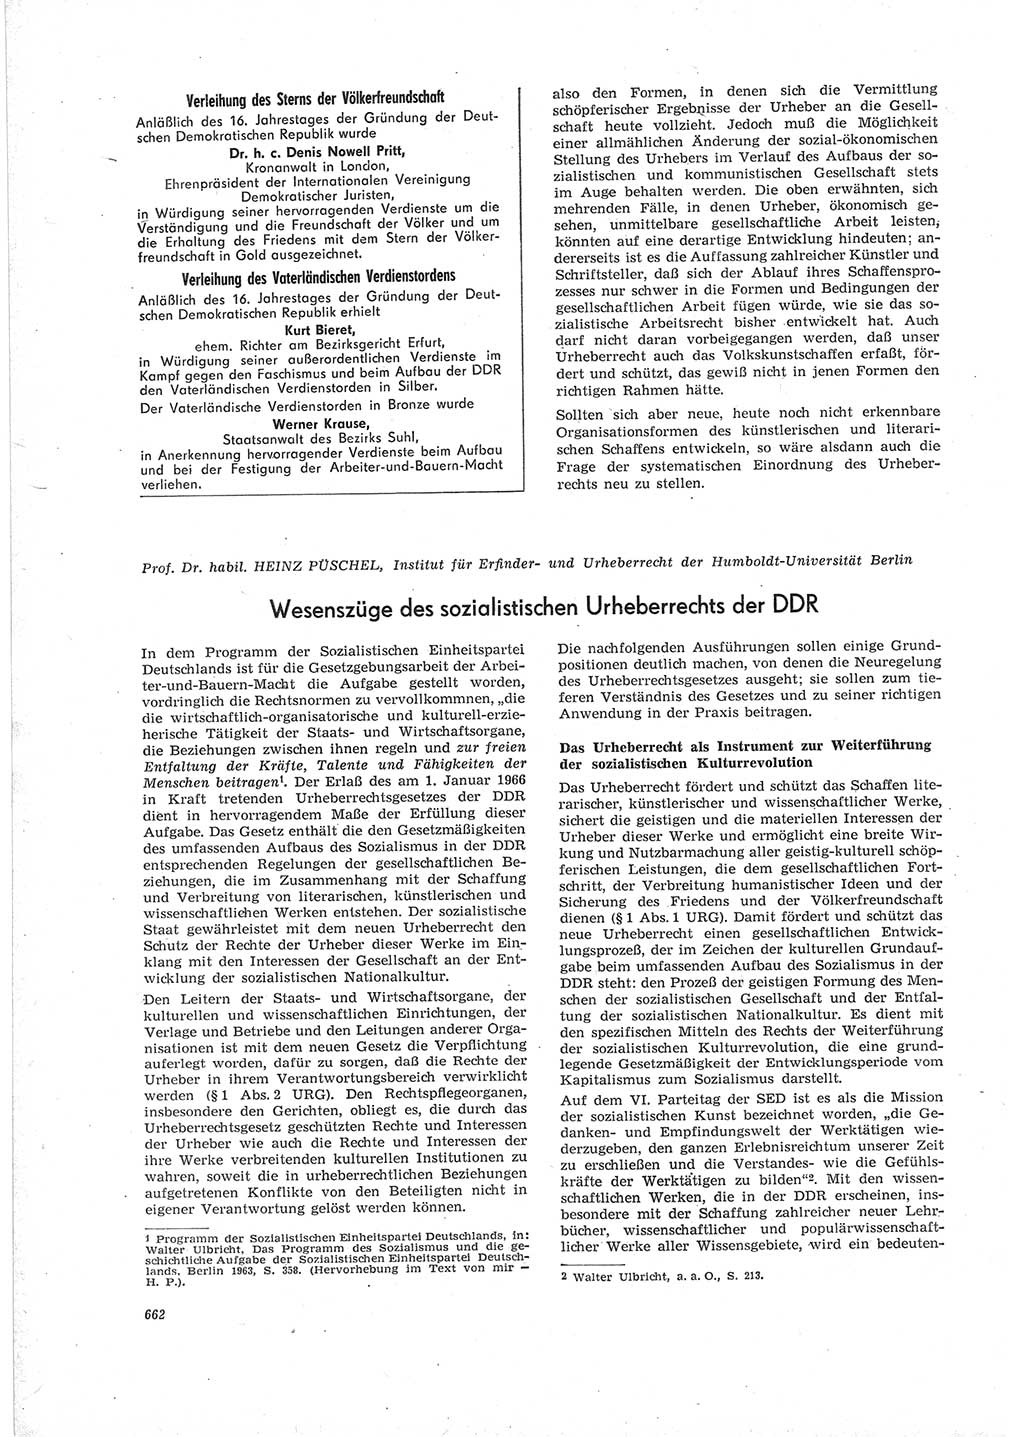 Neue Justiz (NJ), Zeitschrift für Recht und Rechtswissenschaft [Deutsche Demokratische Republik (DDR)], 19. Jahrgang 1965, Seite 662 (NJ DDR 1965, S. 662)